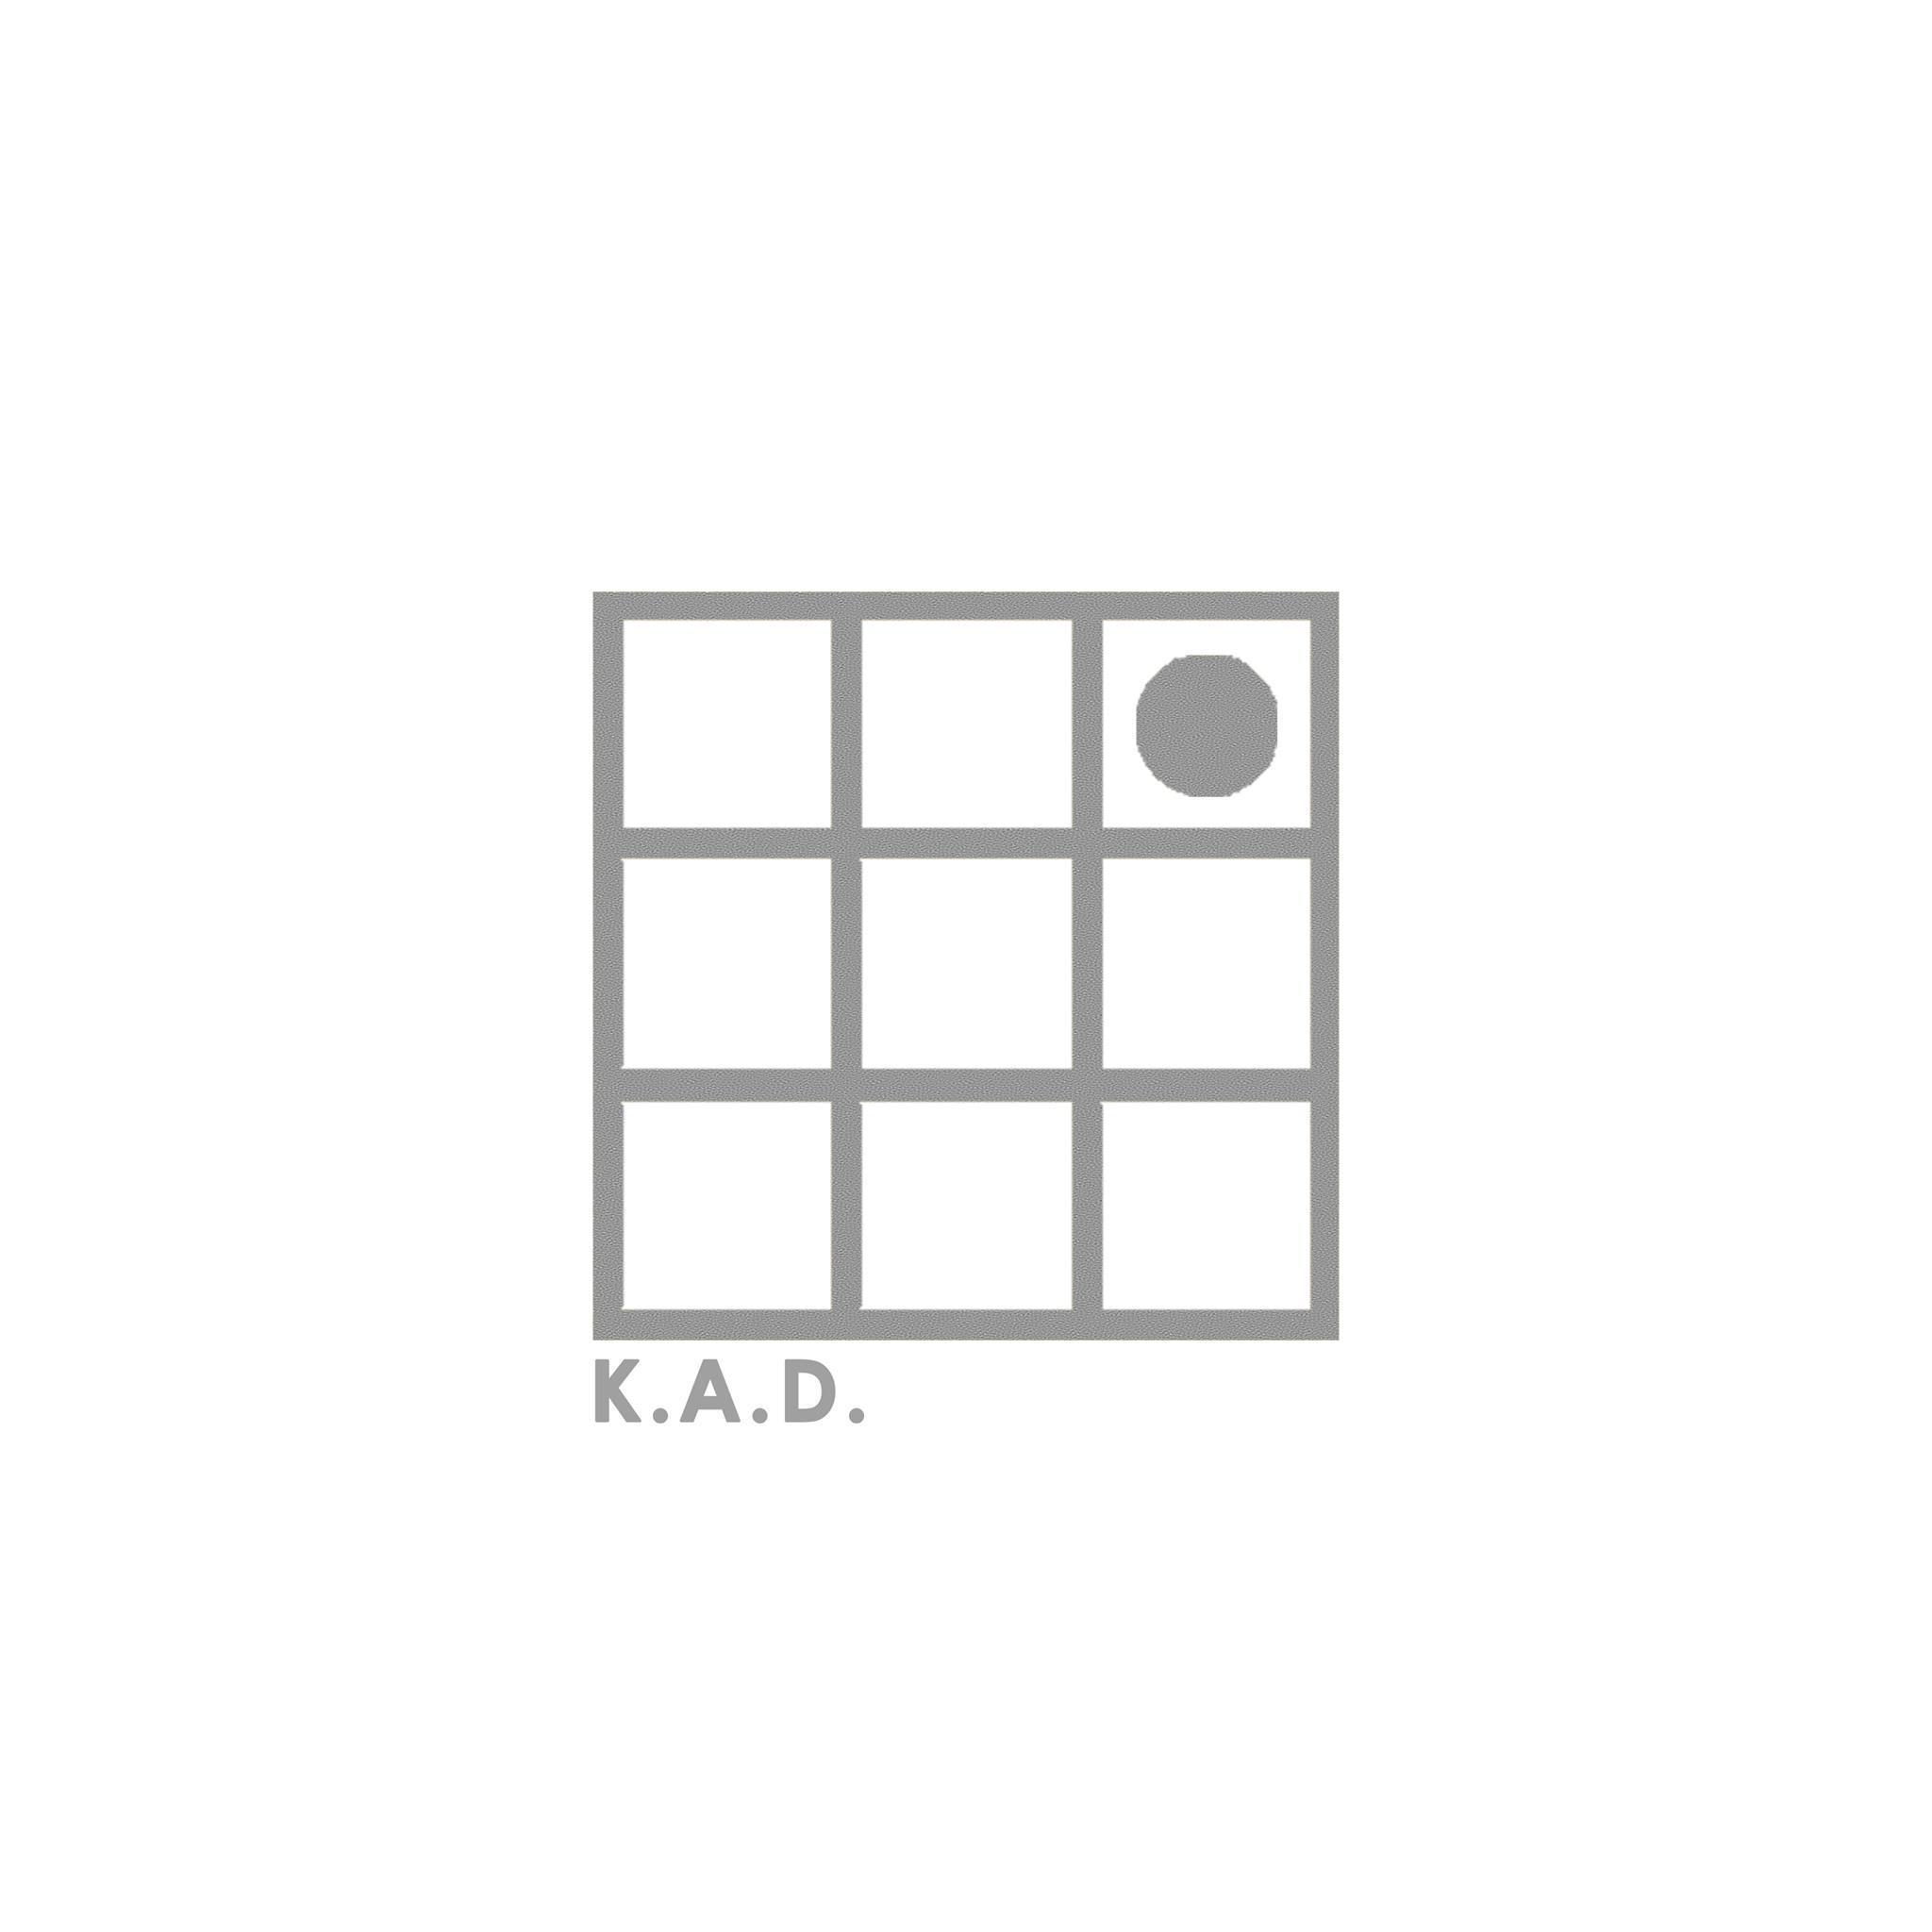 Kuber Architects & Developers - Logo